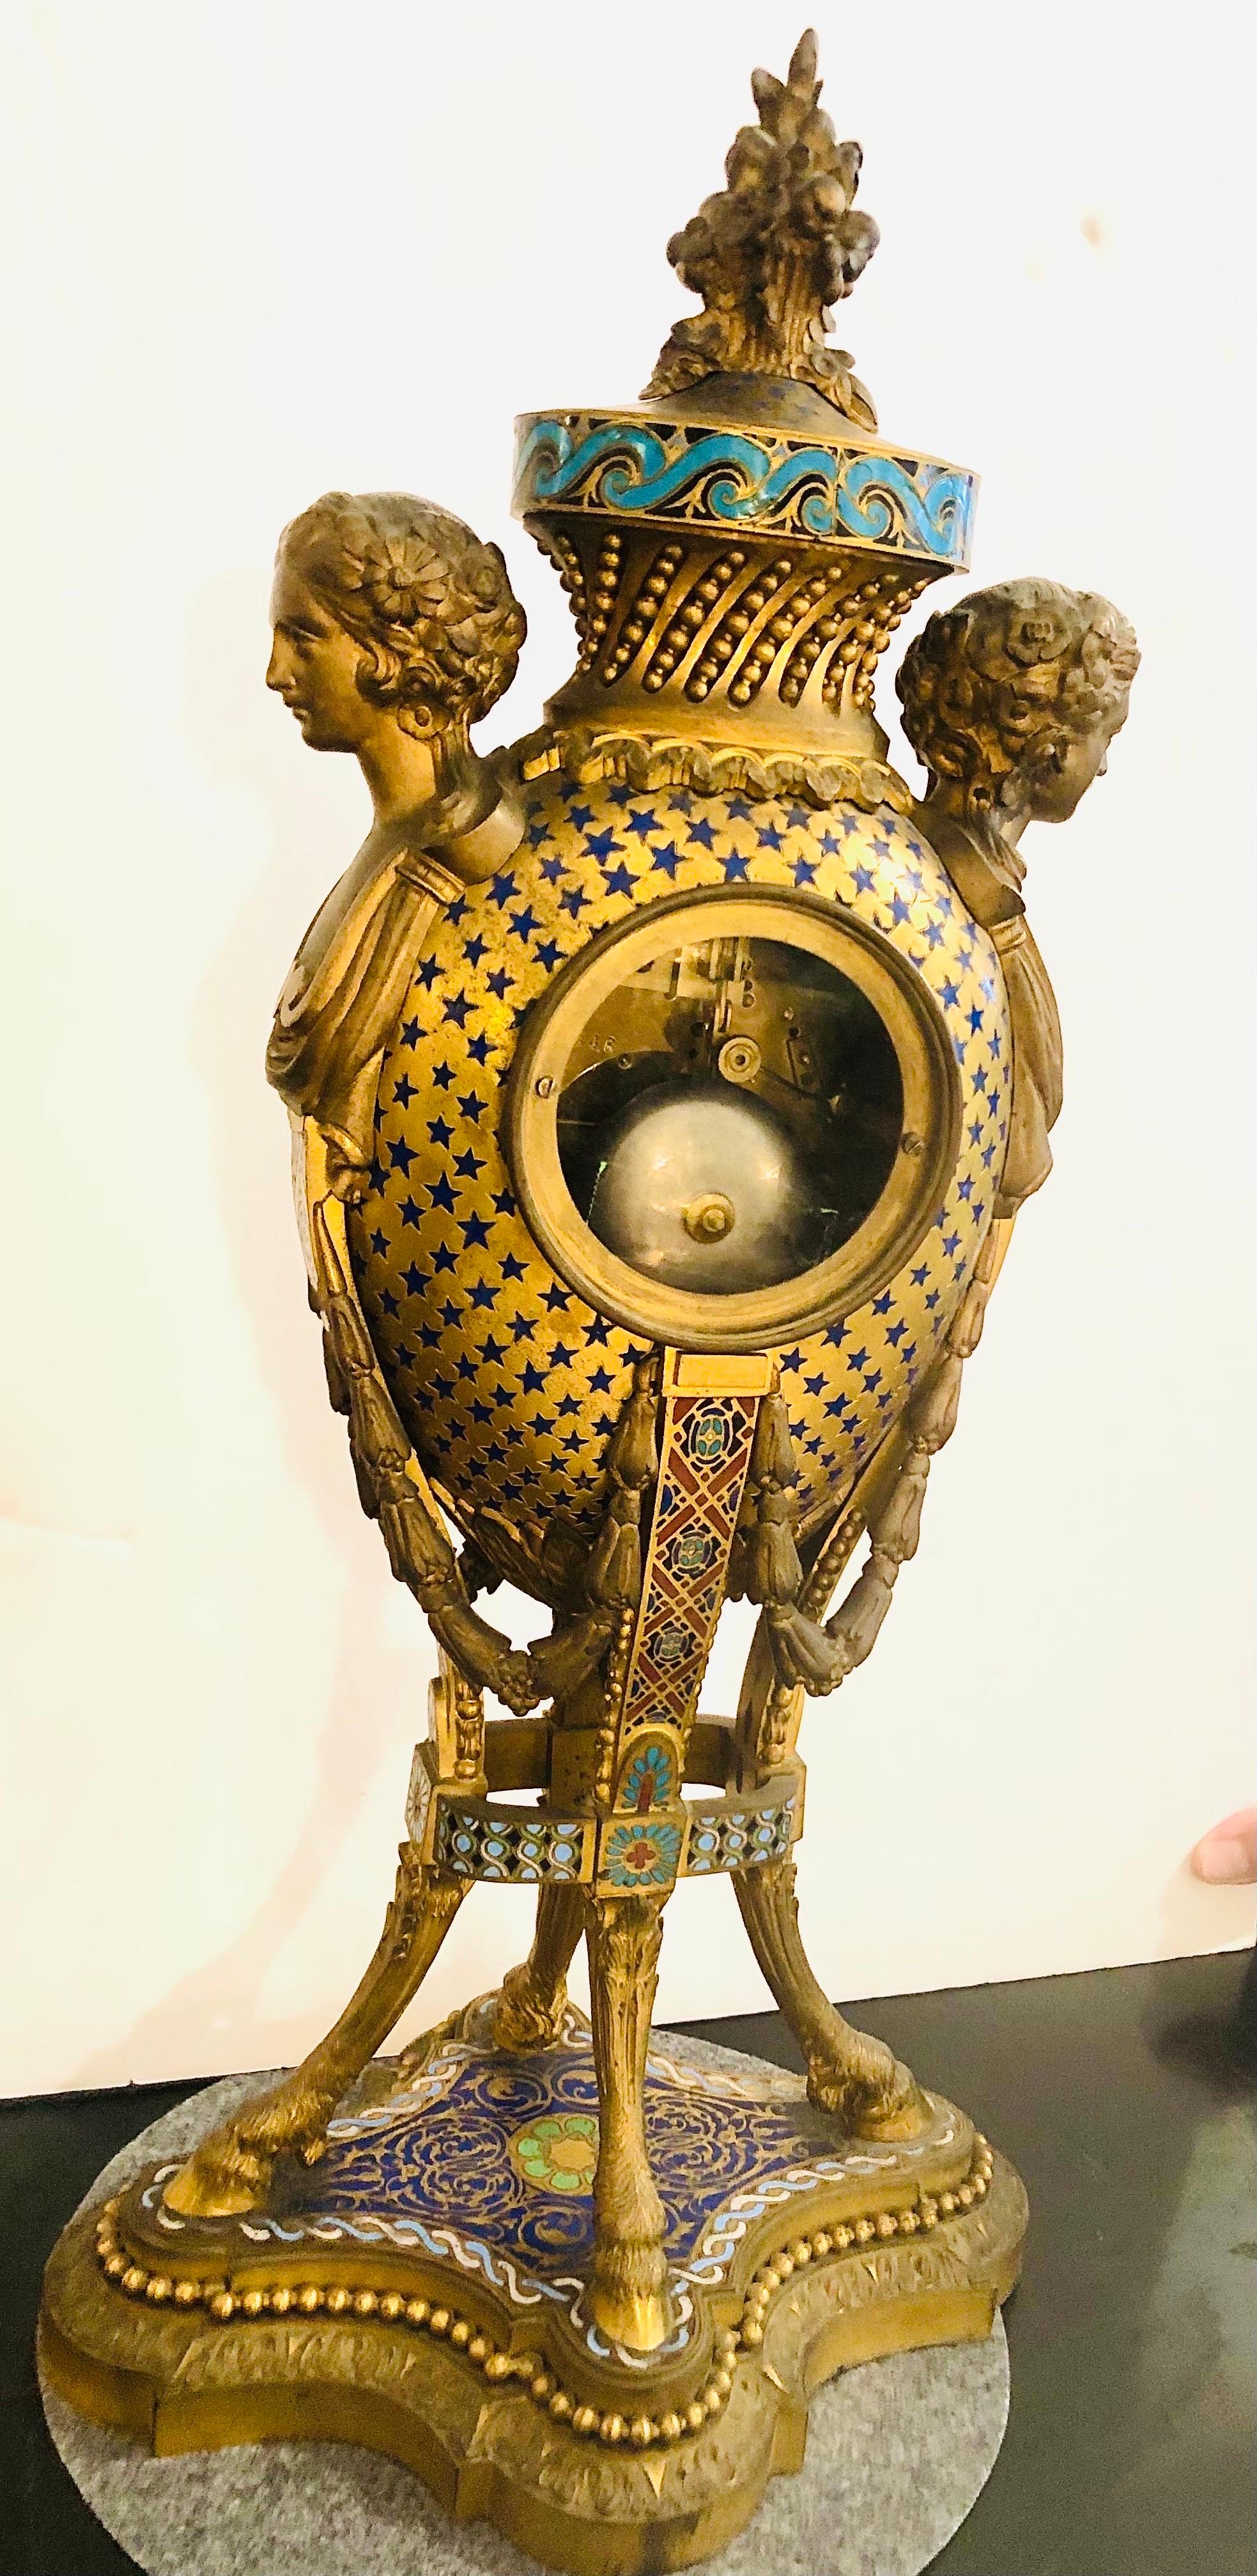 Enameled Bronze and Enamel Barbedienne Paris Clock with Figural Ladies’ Faces & Hoof Feet For Sale